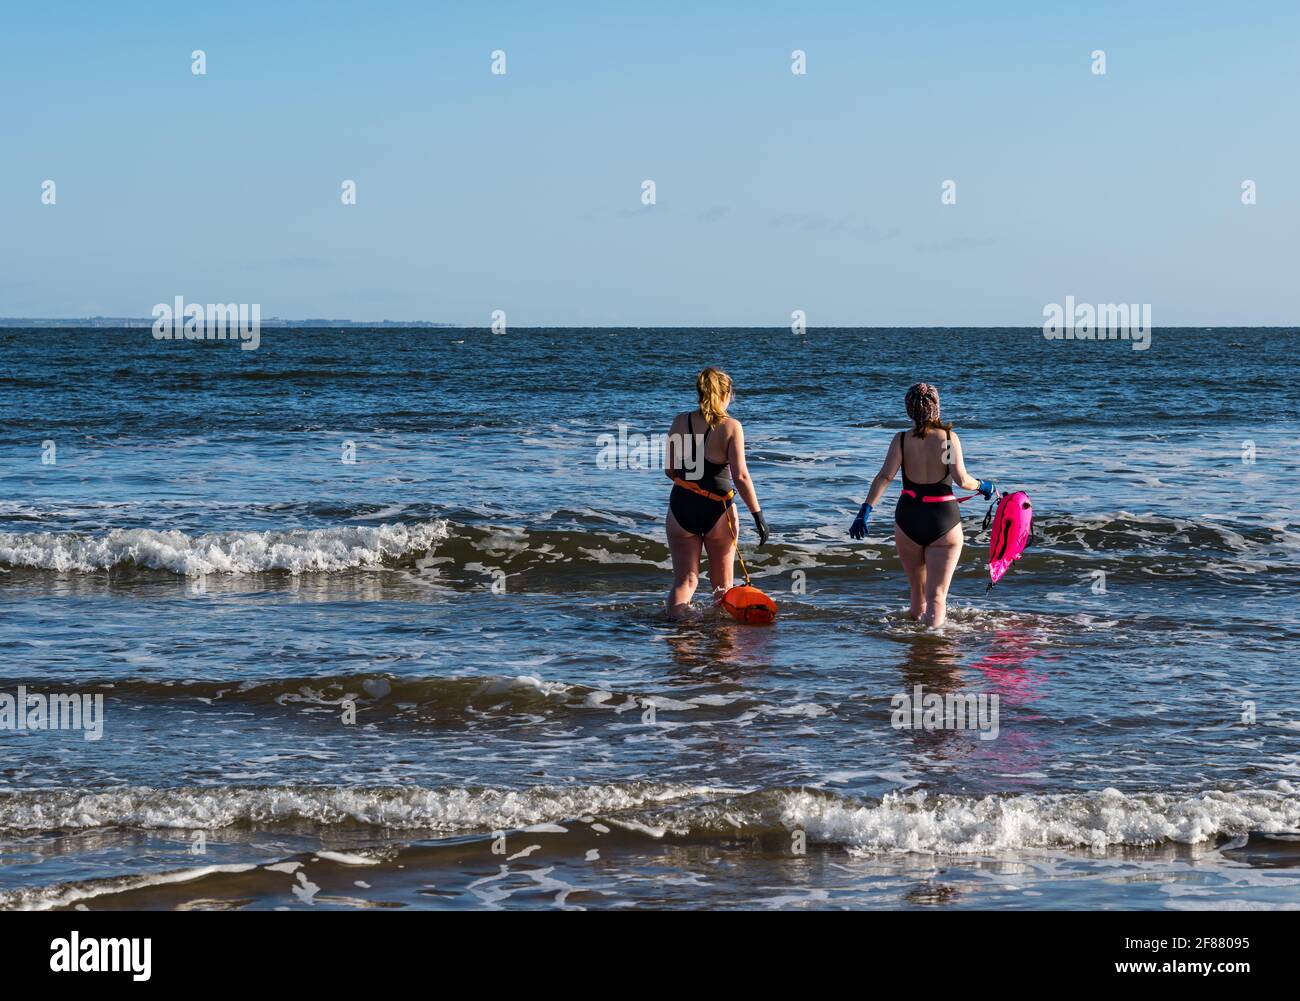 Due donne nuotatori selvatici o in mare aperto in costume da bagno con galleggianti vanno in mare in una giornata di sole, Firth of Forth, Scozia, Regno Unito Foto Stock